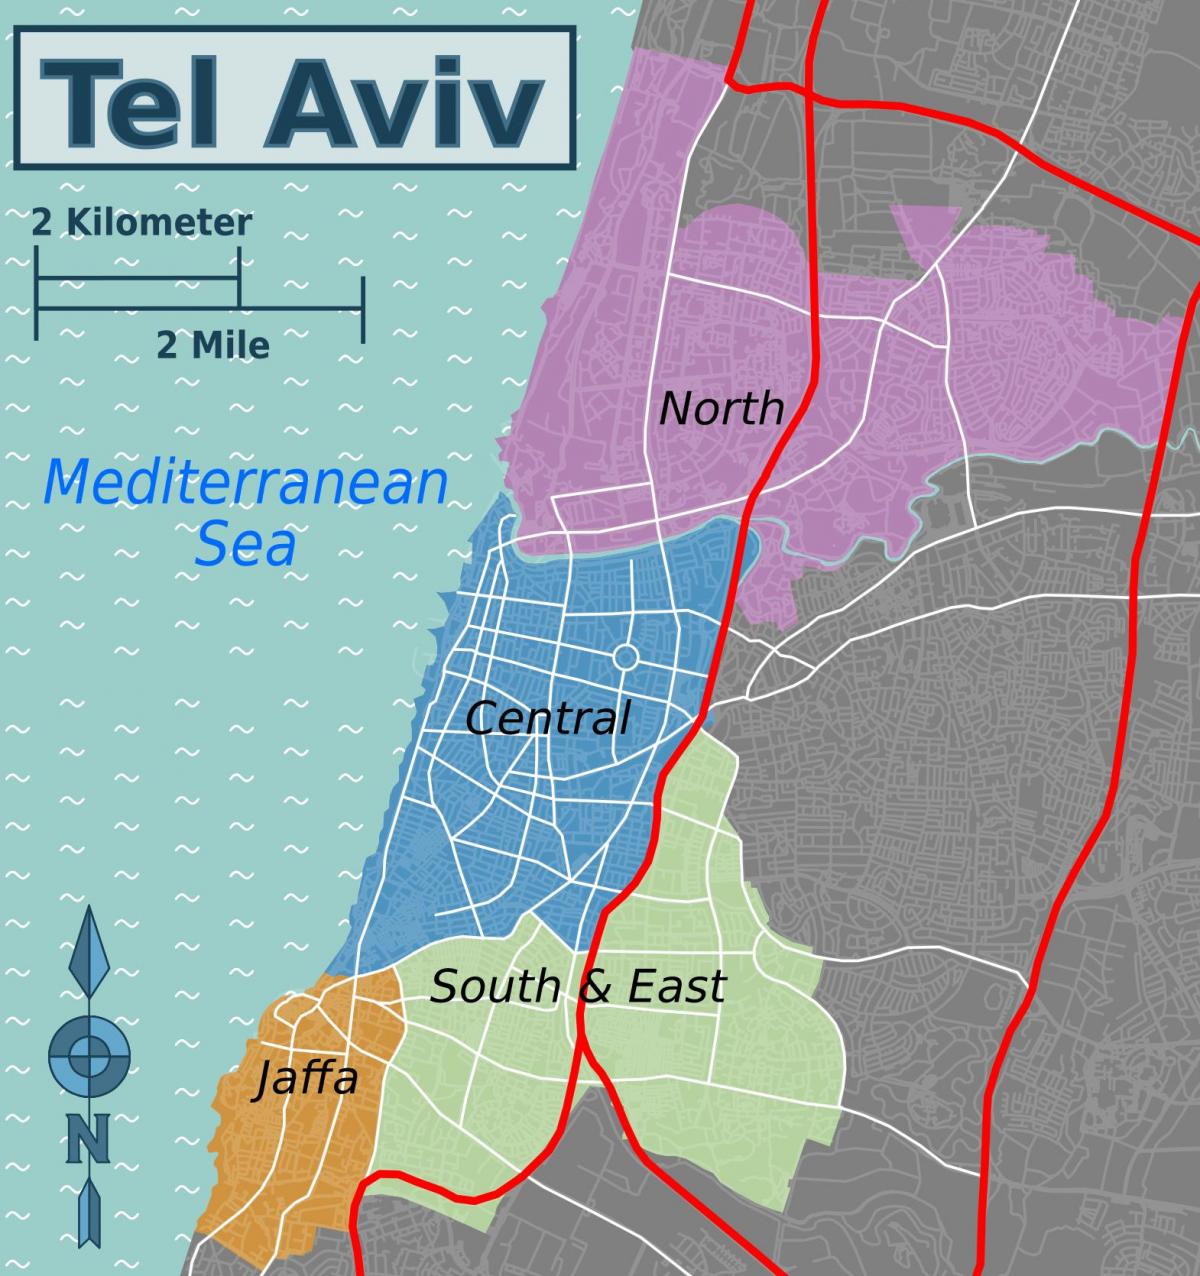 Mapa do distrito de Tel Aviv